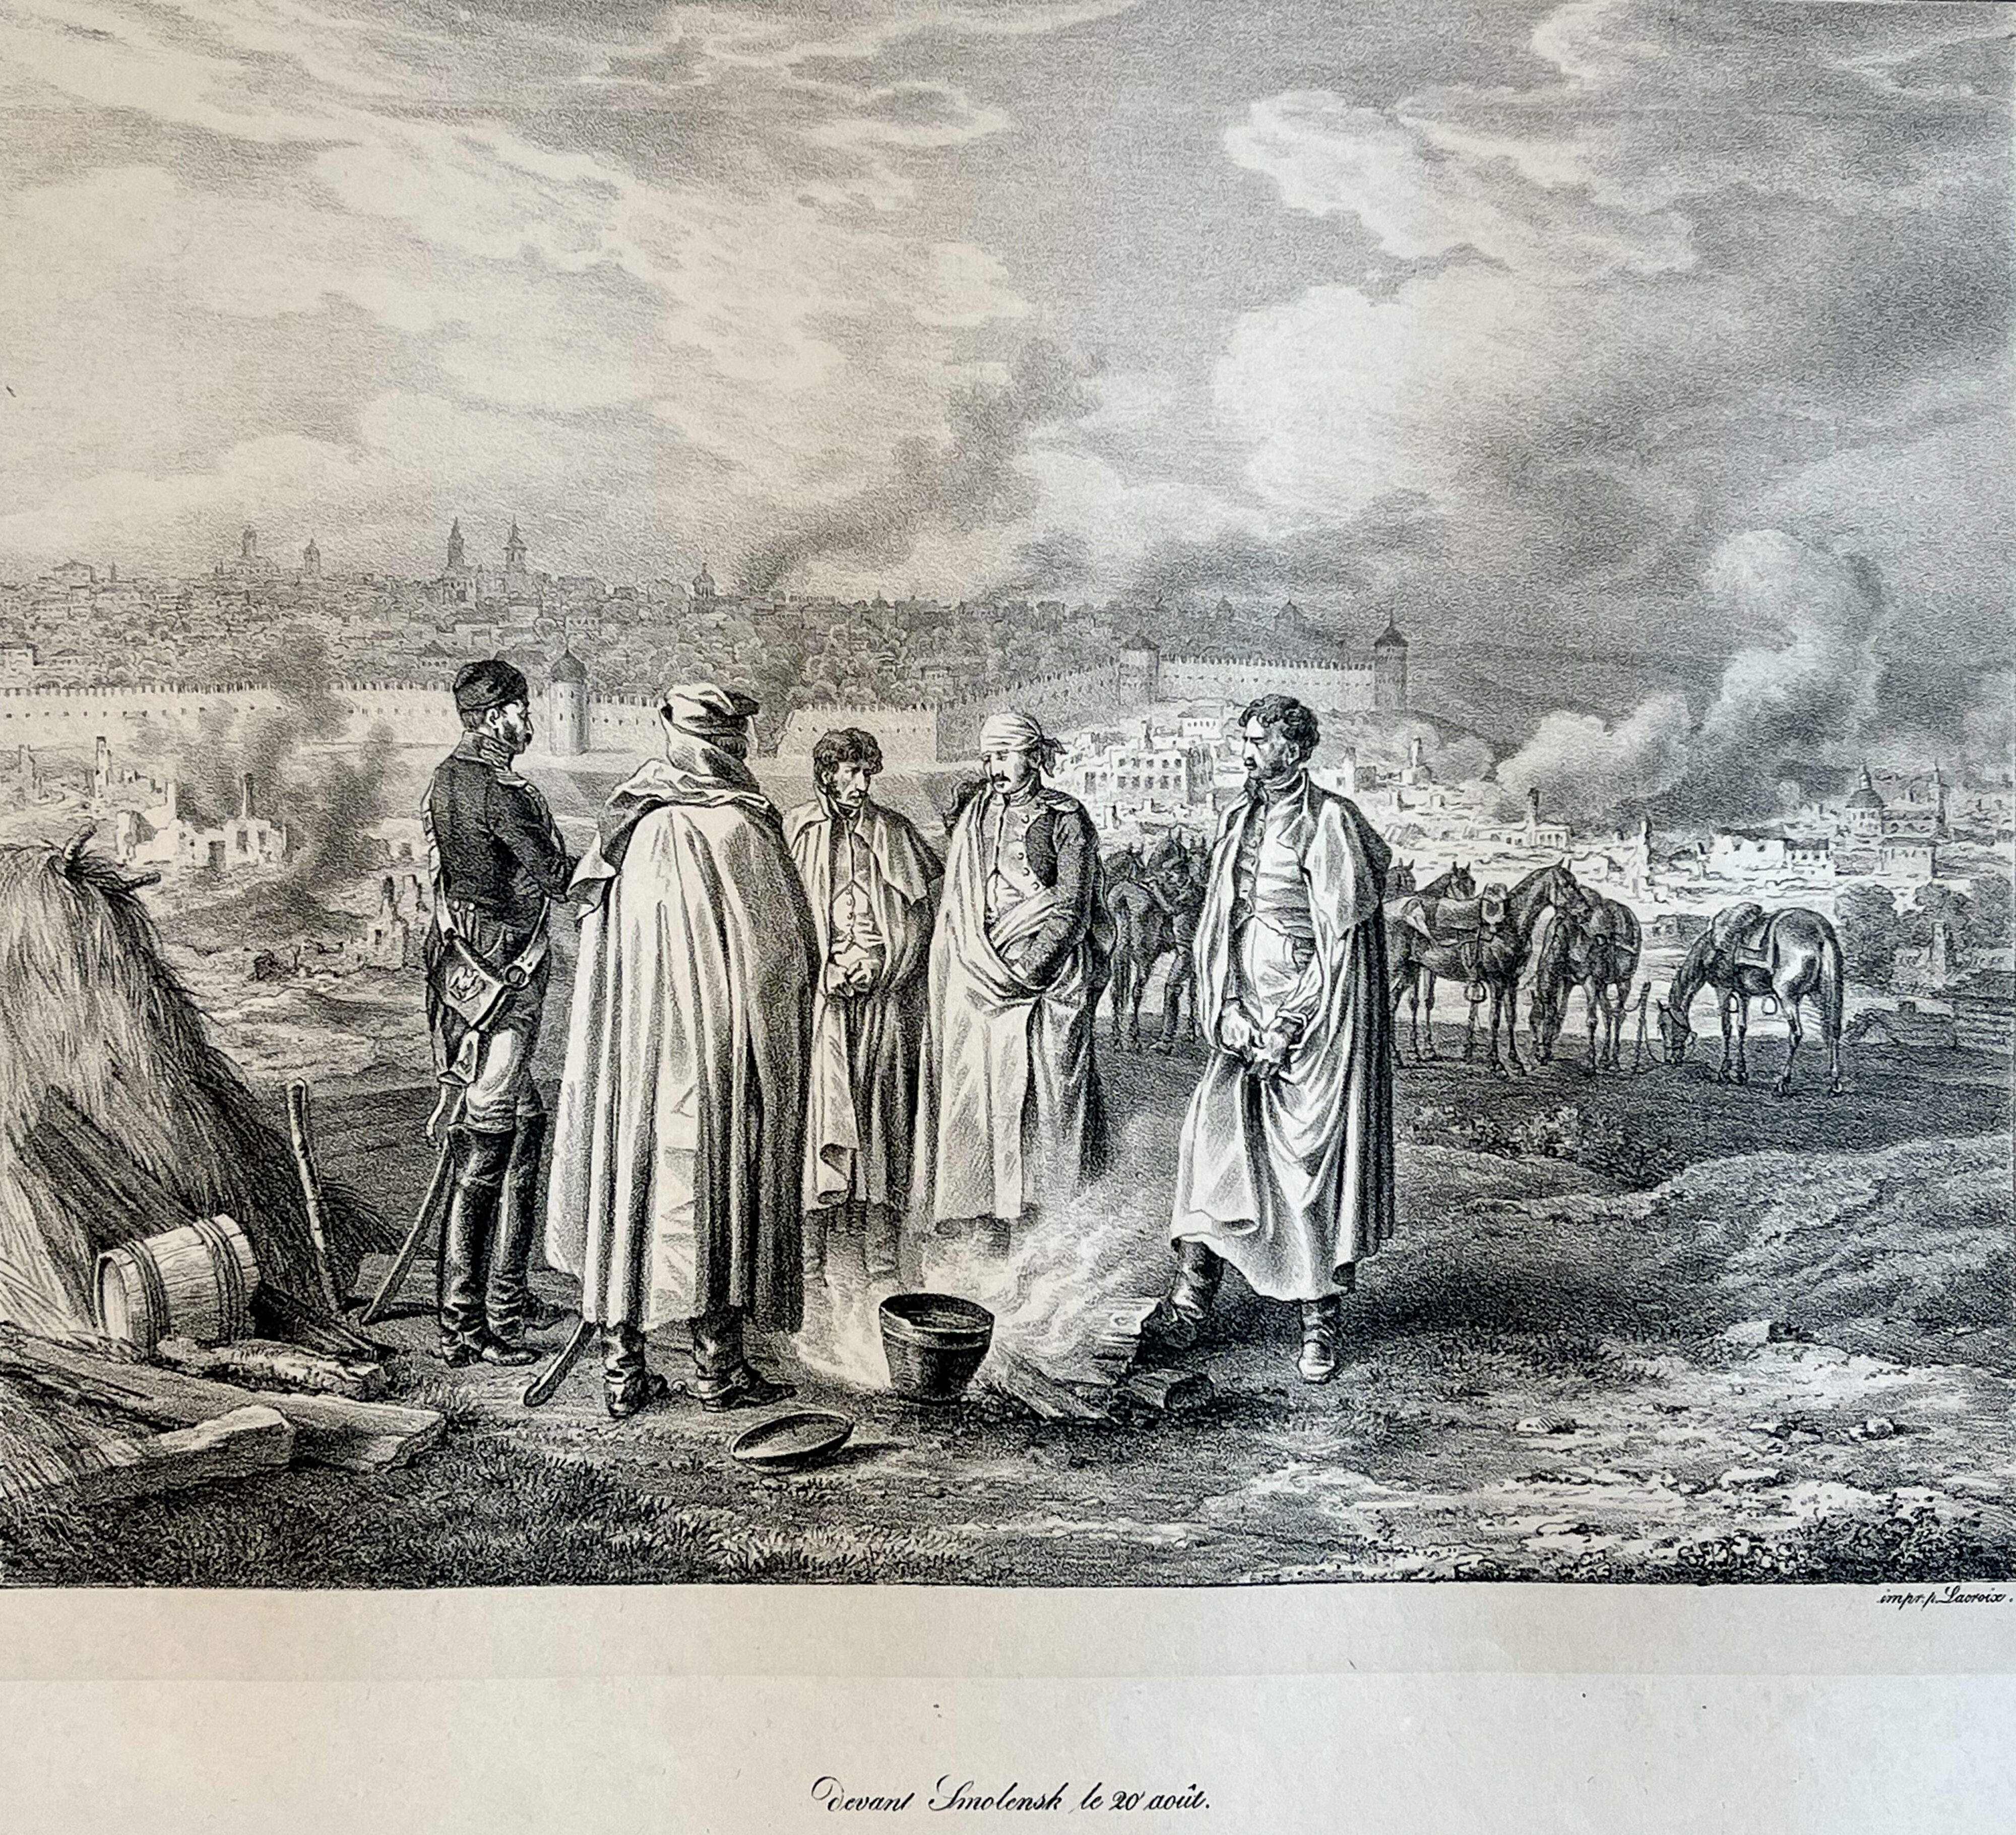 Albrecht Adam, Russland 1812, Smolensk - bei loderndem Feuer